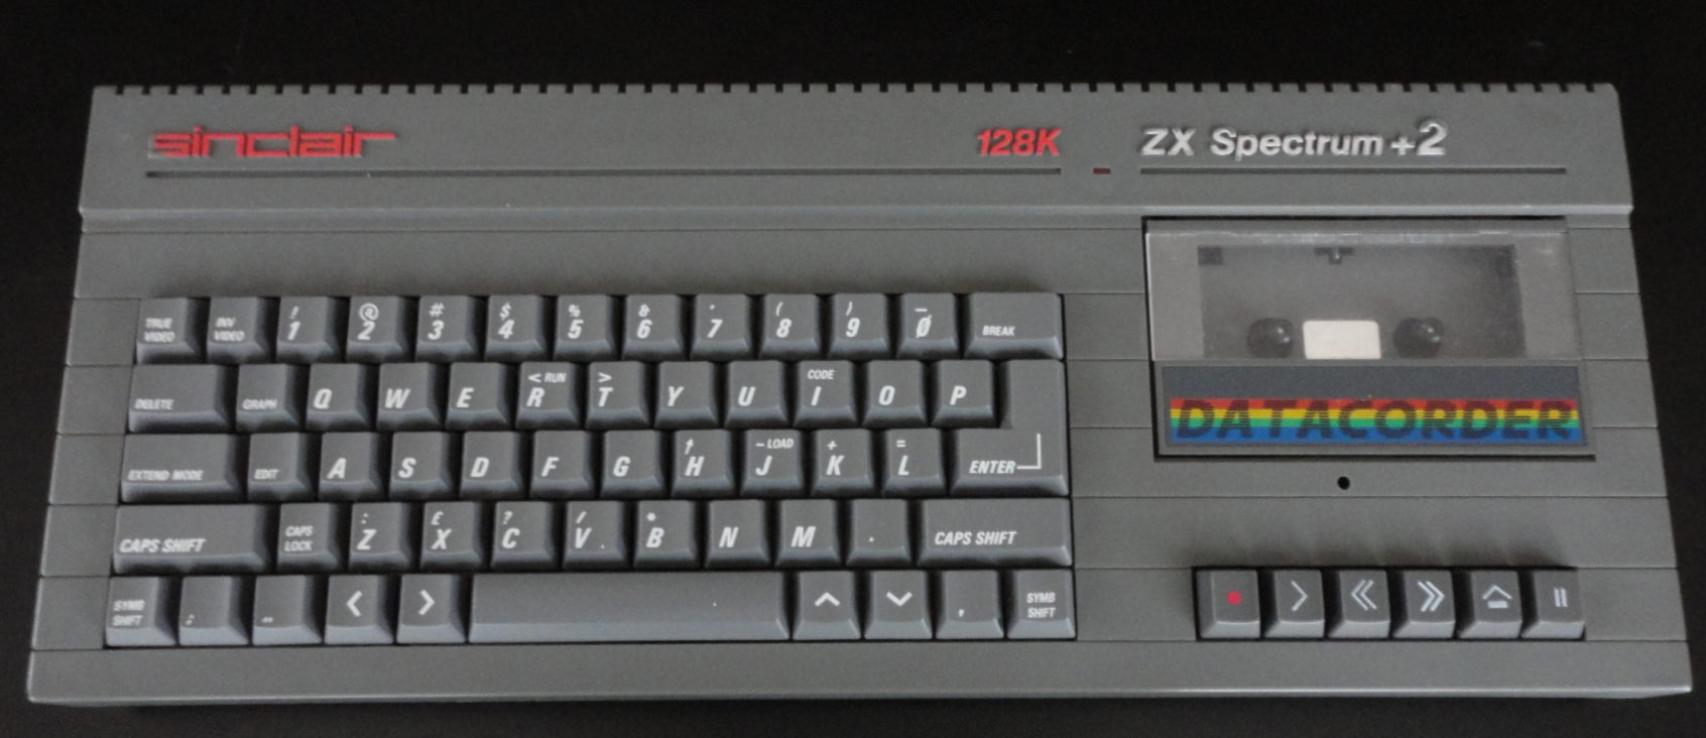 Algunos ordenadores como el ZX Spectrum usaban cassette